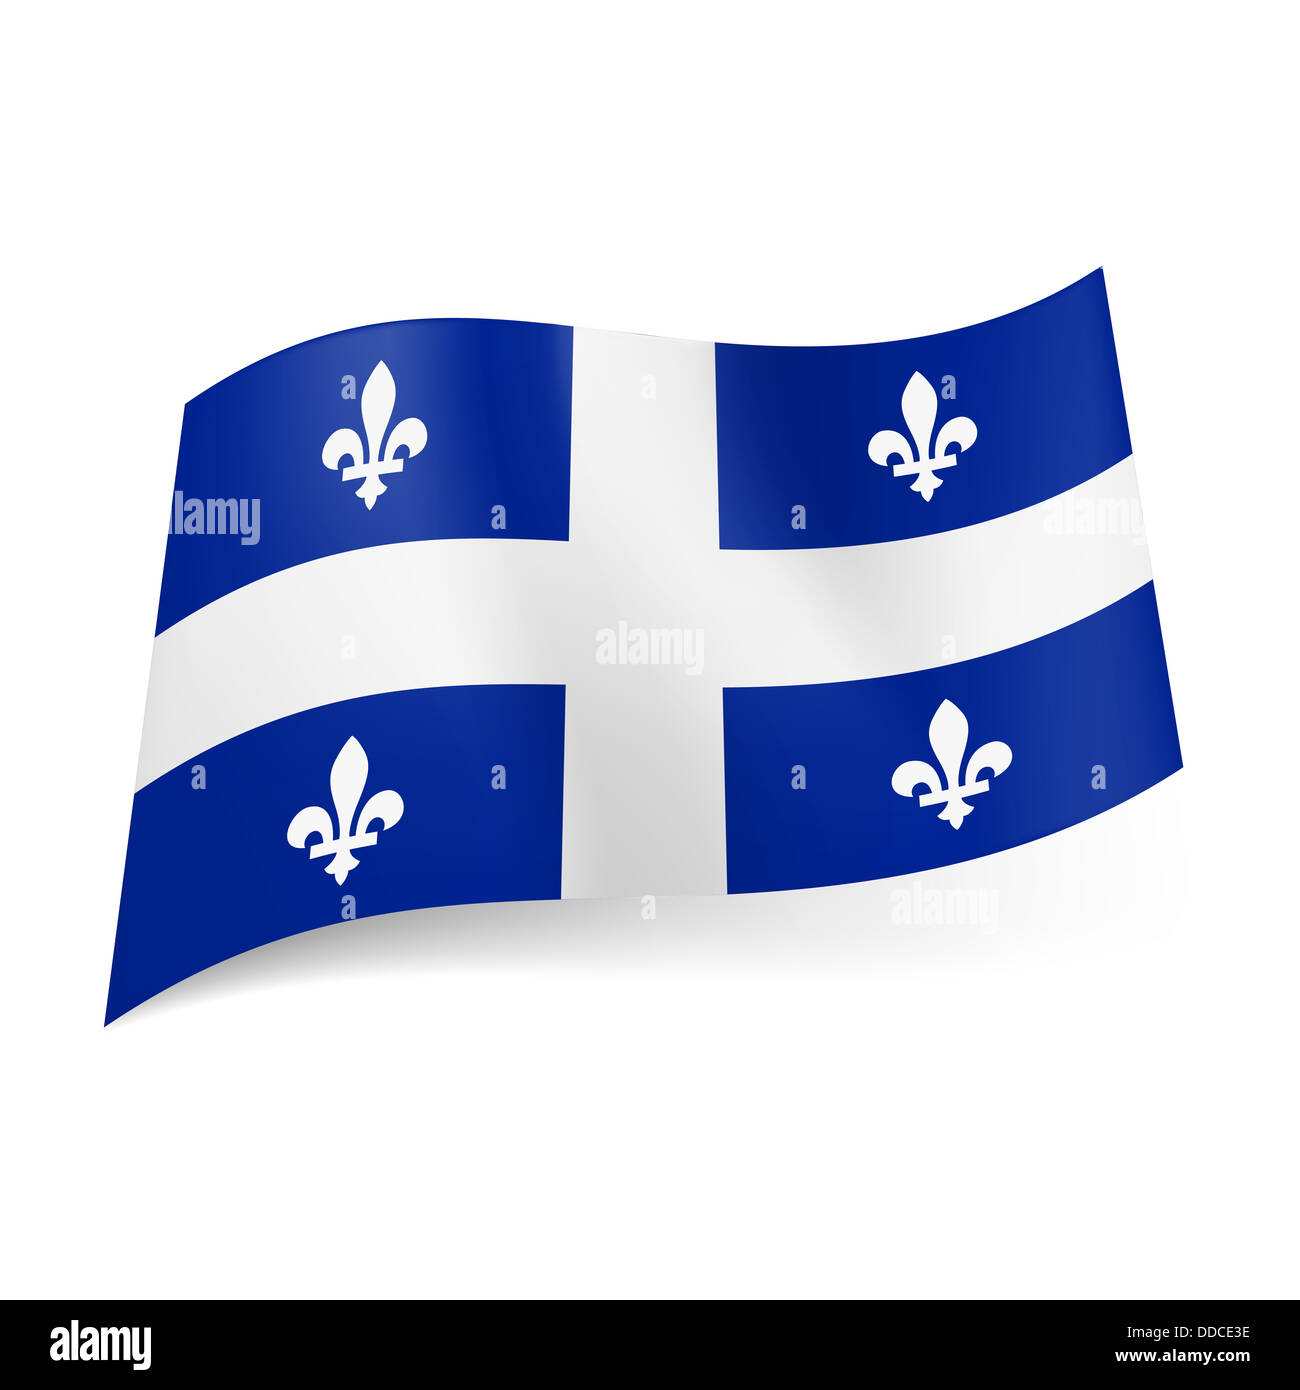 Quốc kỳ Quebec với Chữ thập trắng ở giữa là một trong những biểu tượng quốc tế nổi tiếng của Quebec. Hãy xem hình ảnh liên quan để hiểu thêm về sự tôn trọng và lòng tự trọng của người dân Quebec.